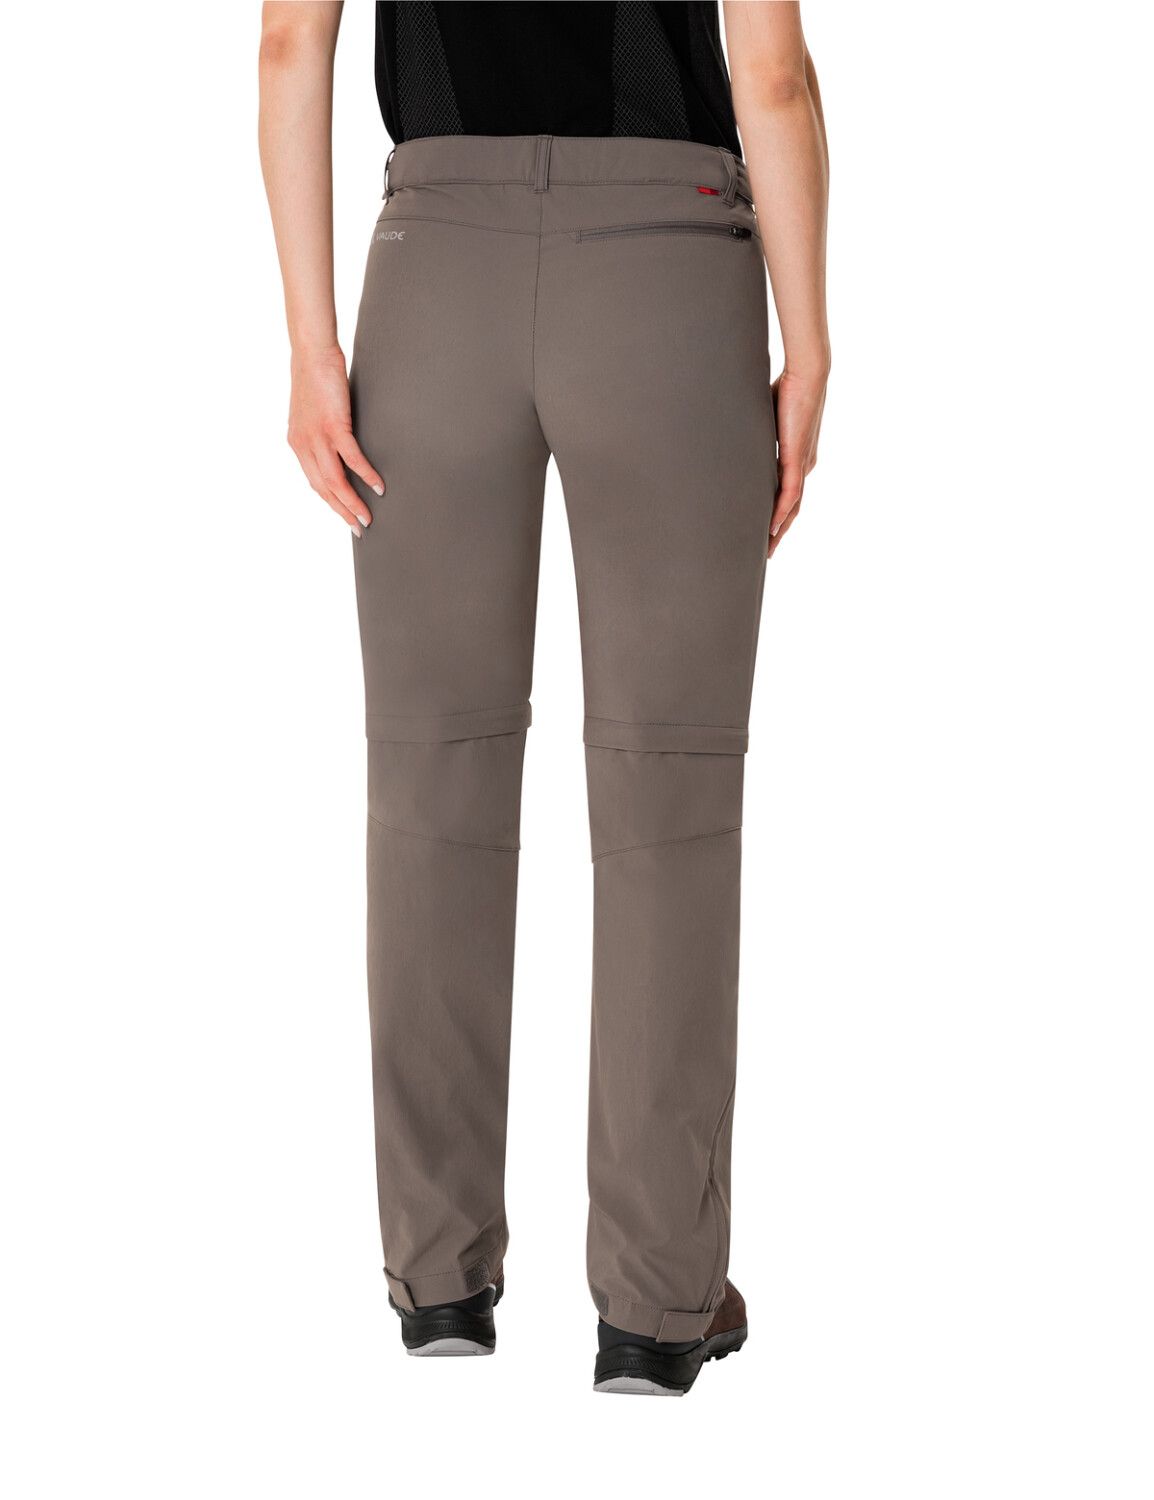 VAUDE Women's Farley Stretch ZO T-Zip Pants (Bild 38)